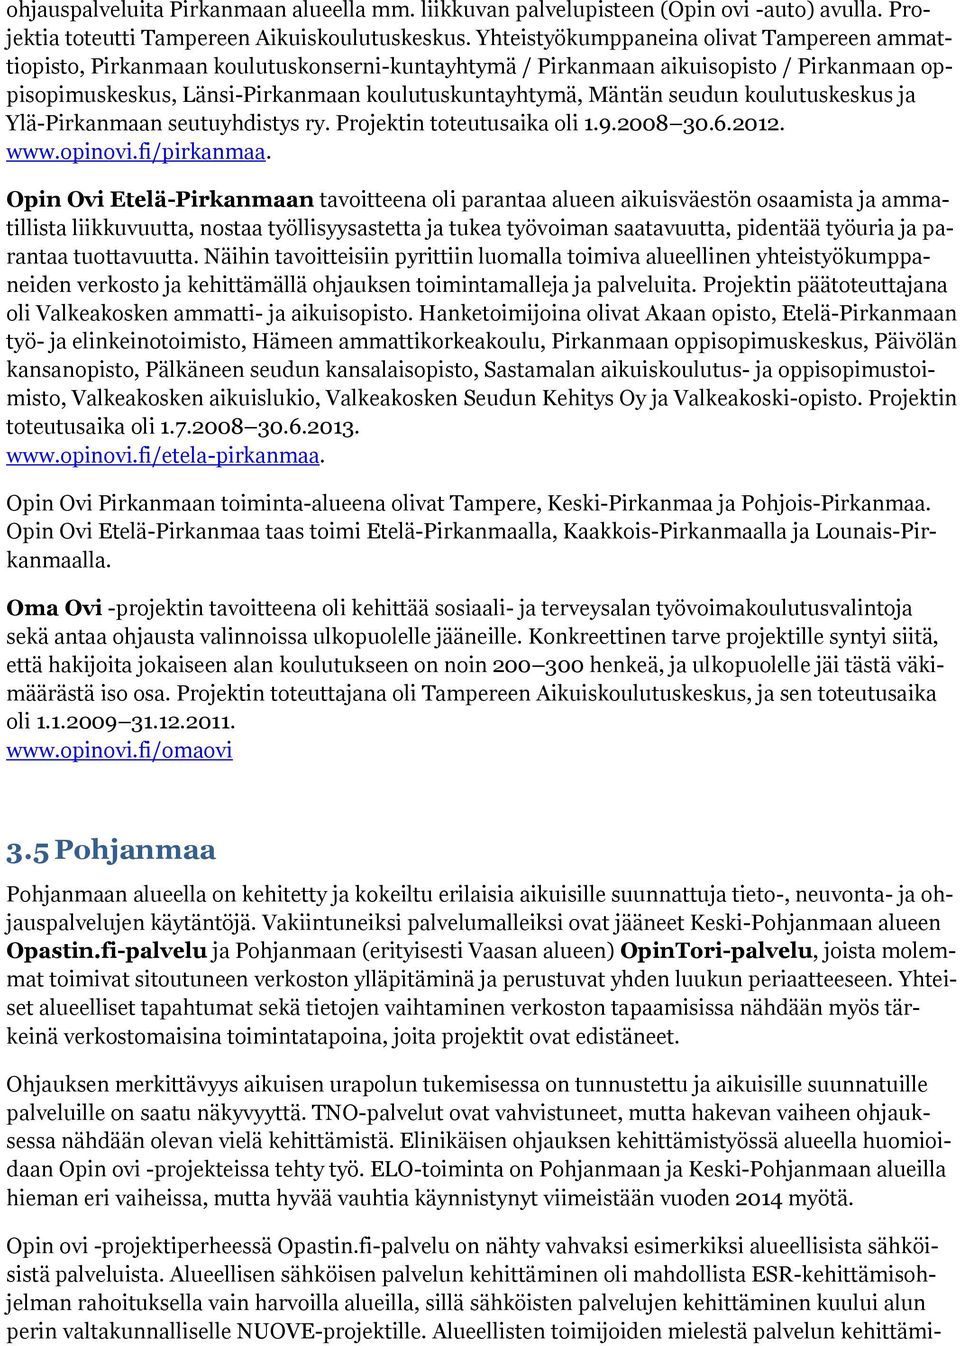 seudun koulutuskeskus ja Ylä-Pirkanmaan seutuyhdistys ry. Projektin toteutusaika oli 1.9.2008 30.6.2012. www.opinovi.fi/pirkanmaa.